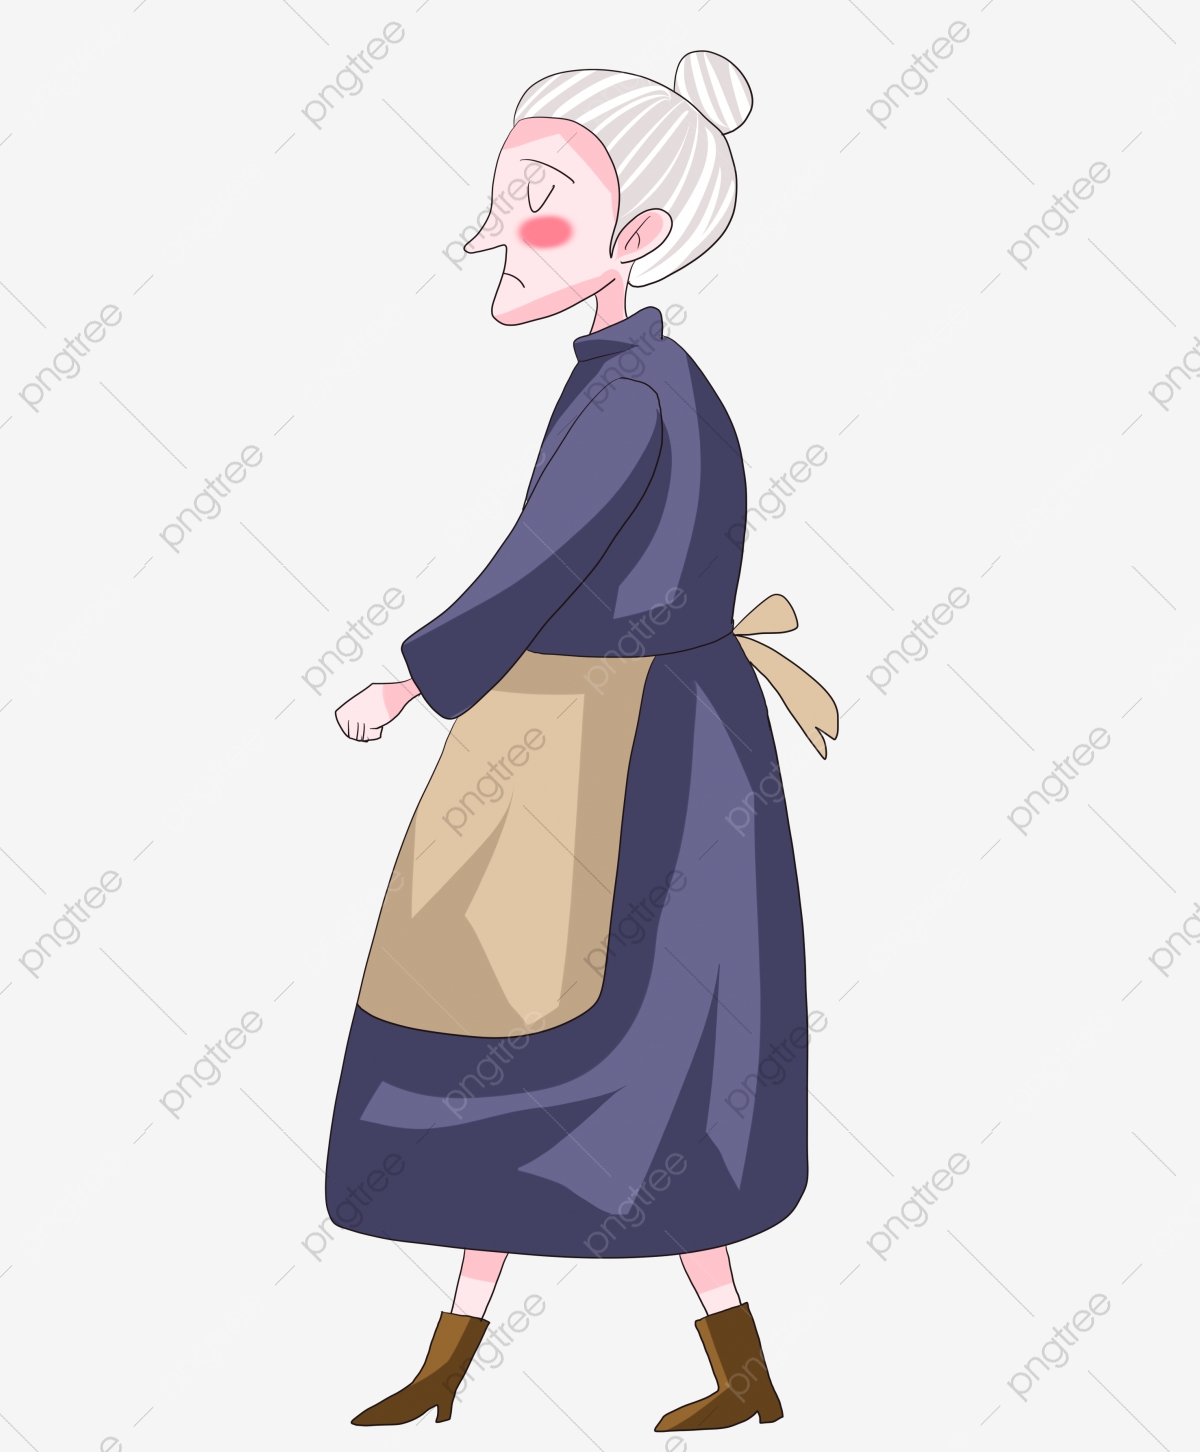 2481 1 صورة امراة عجوز، صور امرأة عجوز للفيس بوك طائش